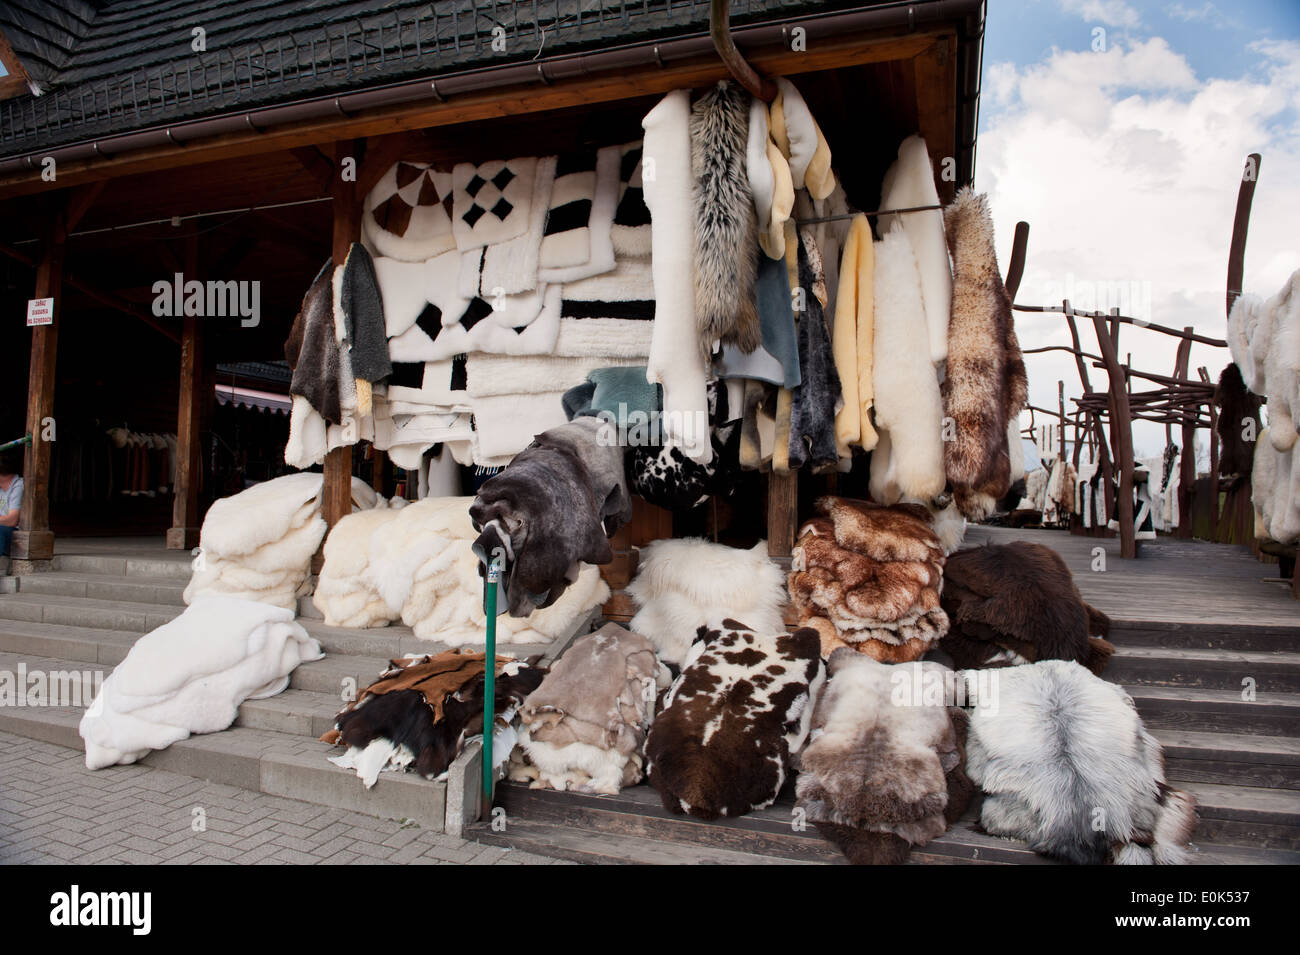 Beaucoup de moutons à fourrure marché de Gubalowka à Zakopane, Pologne, Europe 2014. Ciel nuageux, l'orientation horizontale, personne. Banque D'Images